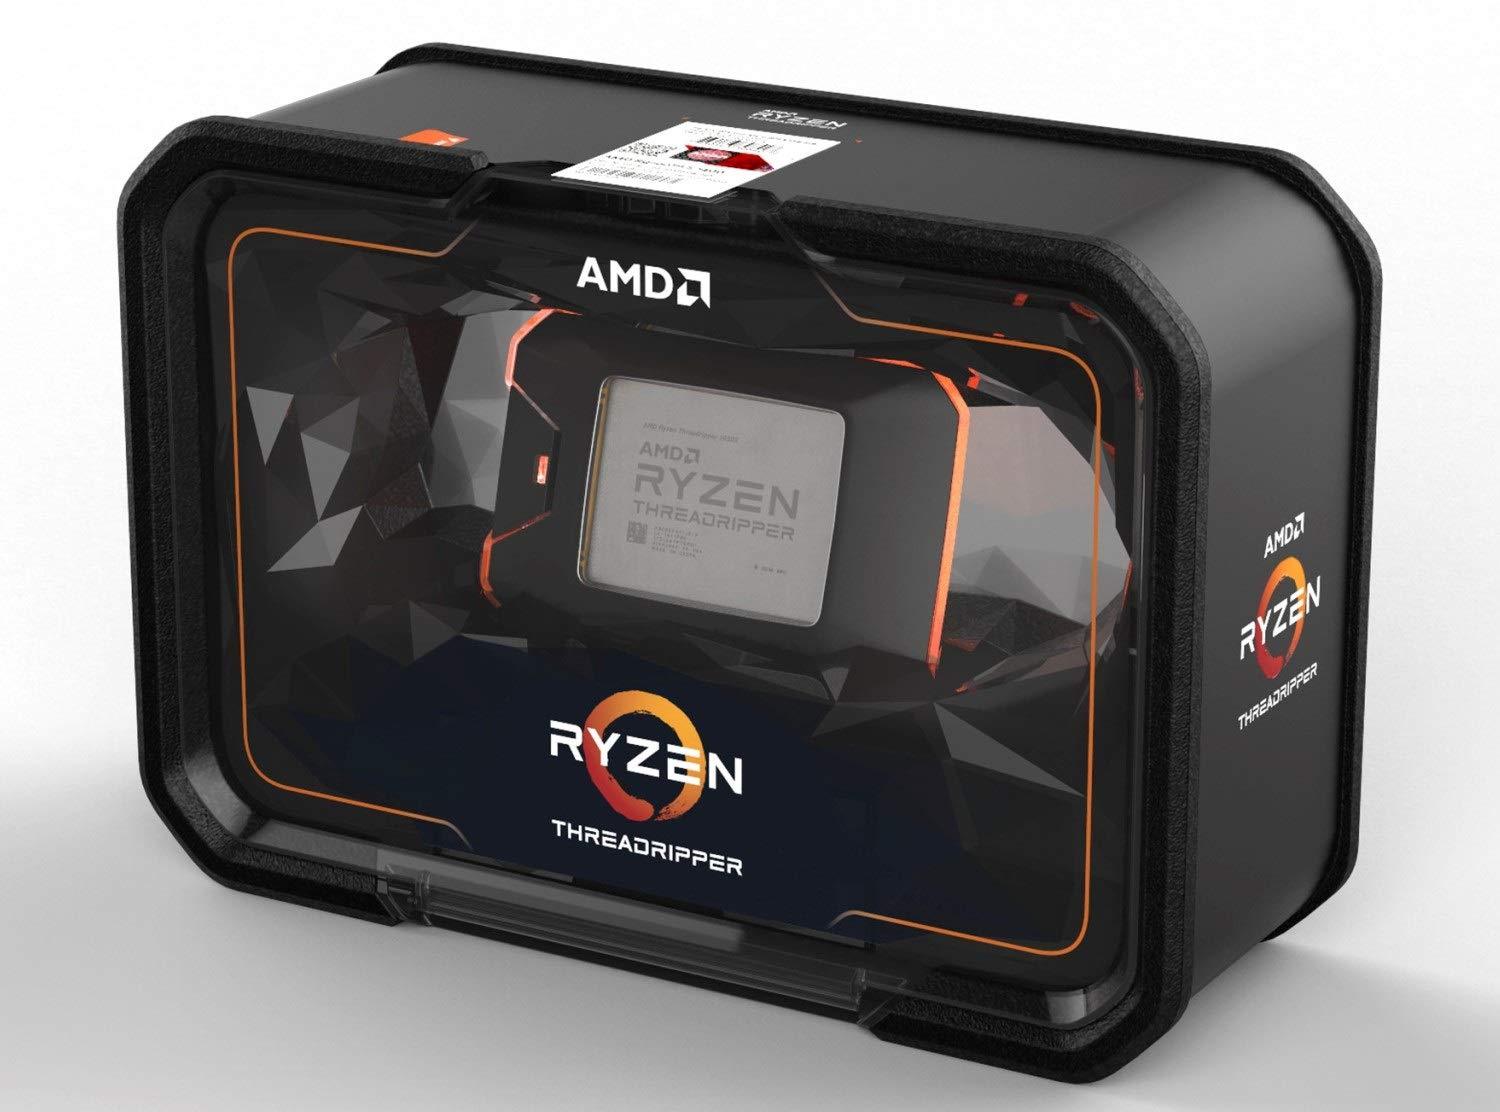 AMD Ryzen Threadripper 2990WX, 32 Core, 64 Thread, 4.2GHz - sTR4 CPU - Store 974 | ستور ٩٧٤